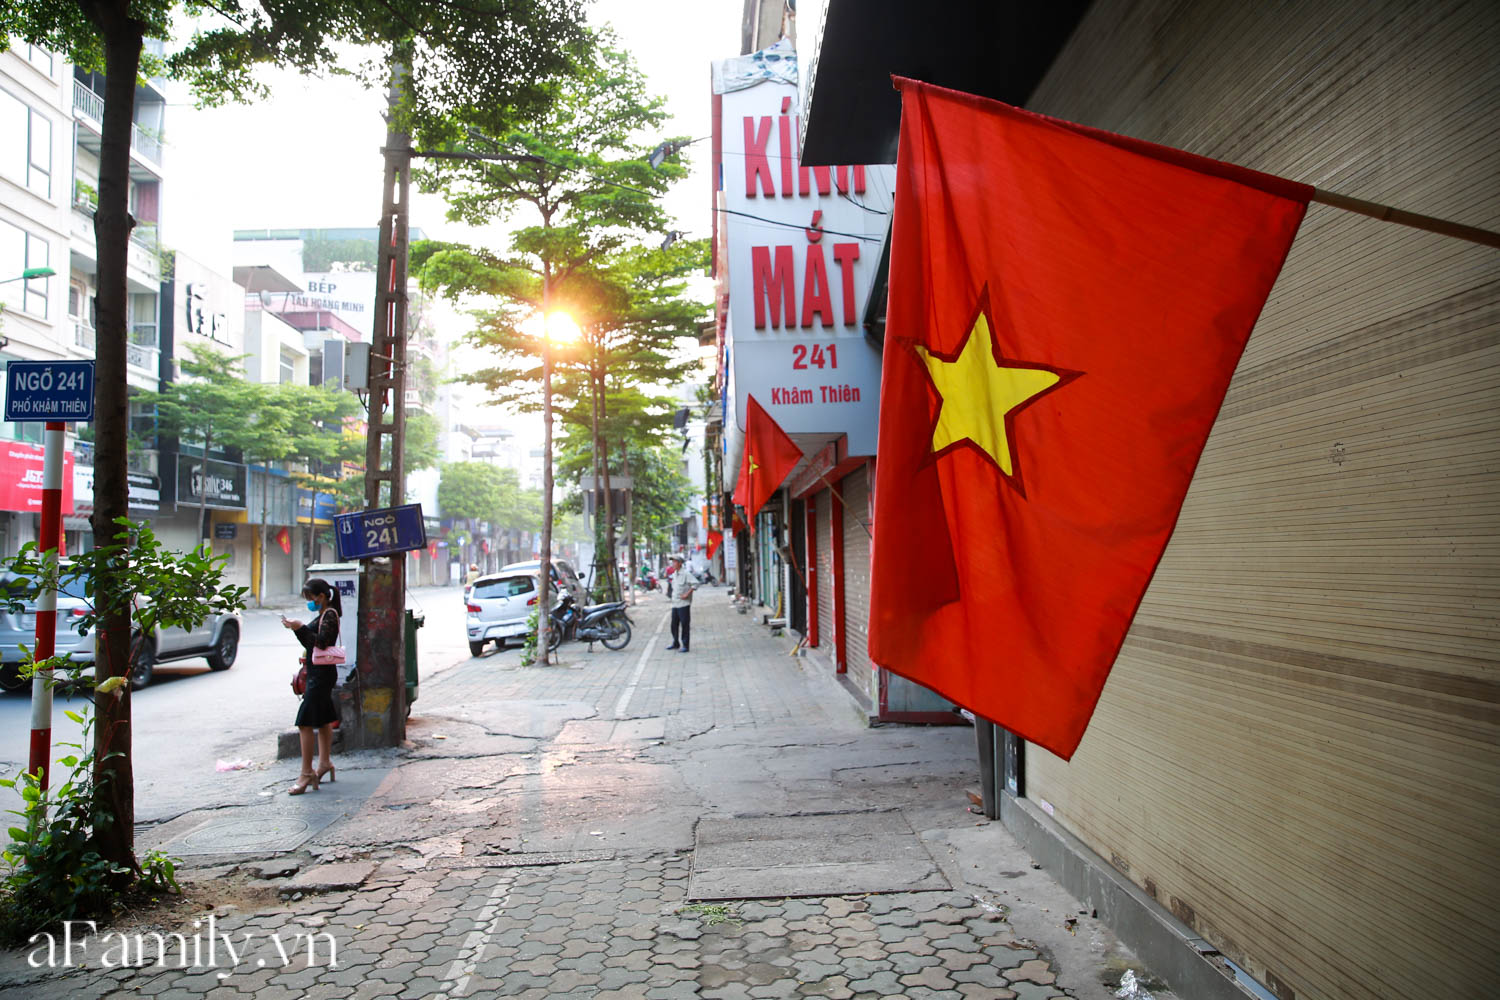 Áo cờ Tổ quốc là biểu tượng truyền thống đầy kiêu hãnh của dân tộc Việt Nam. Mỗi lần ngắm nhìn bức ảnh về áo cờ Tổ quốc, bạn sẽ được đắm mình trong tình yêu quê hương, nâng niu truyền thống và tự hào về đất nước.